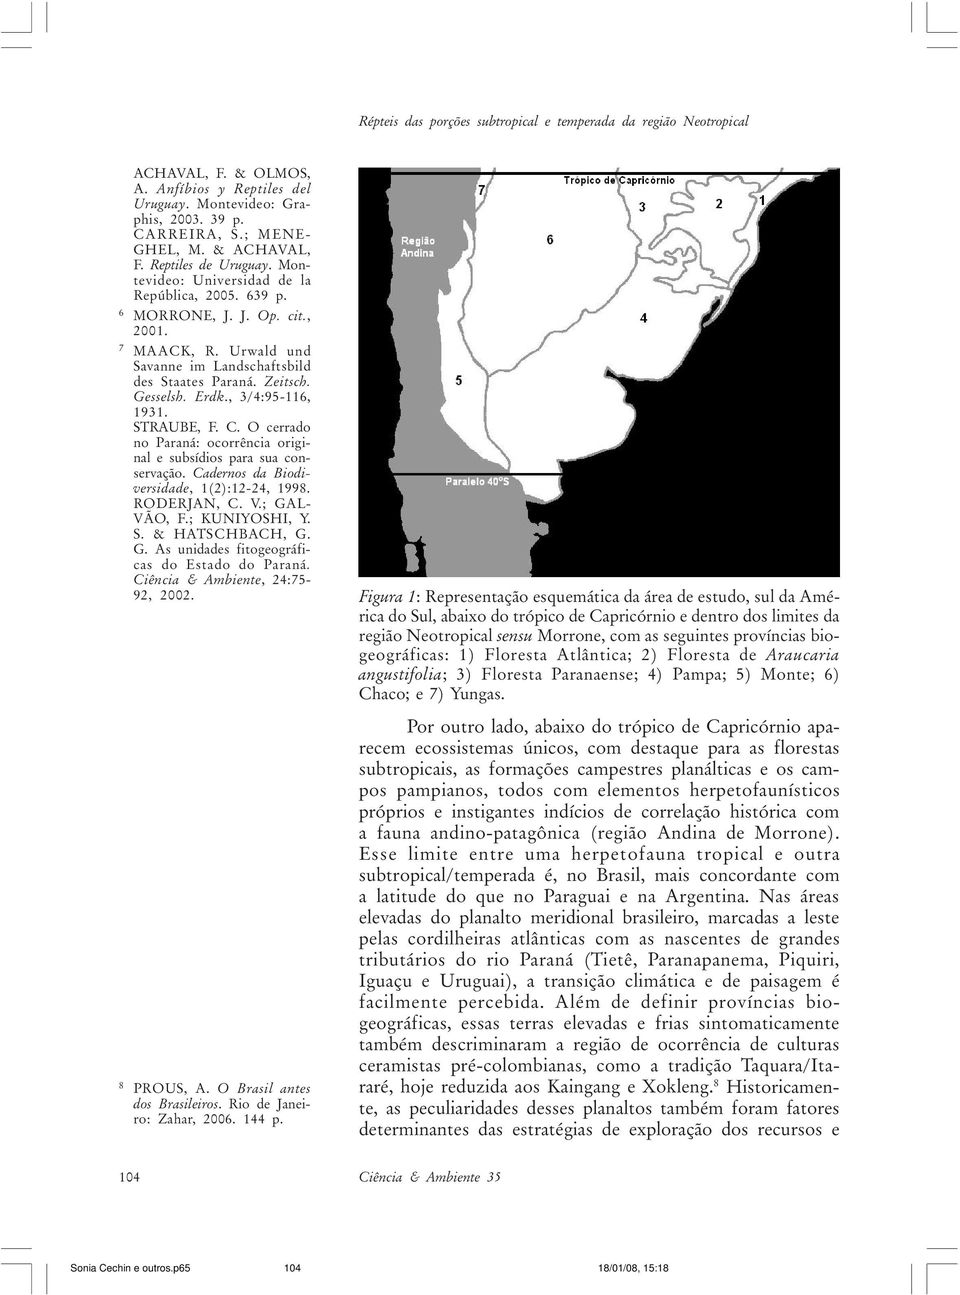 Erdk., 3/4:95-116, 1931. STRAUBE, F. C. O cerrado no Paraná: ocorrência original e subsídios para sua conservação. Cadernos da Biodiversidade, 1(2):12-24, 1998. RODERJAN, C. V.; GAL- VÃO, F.